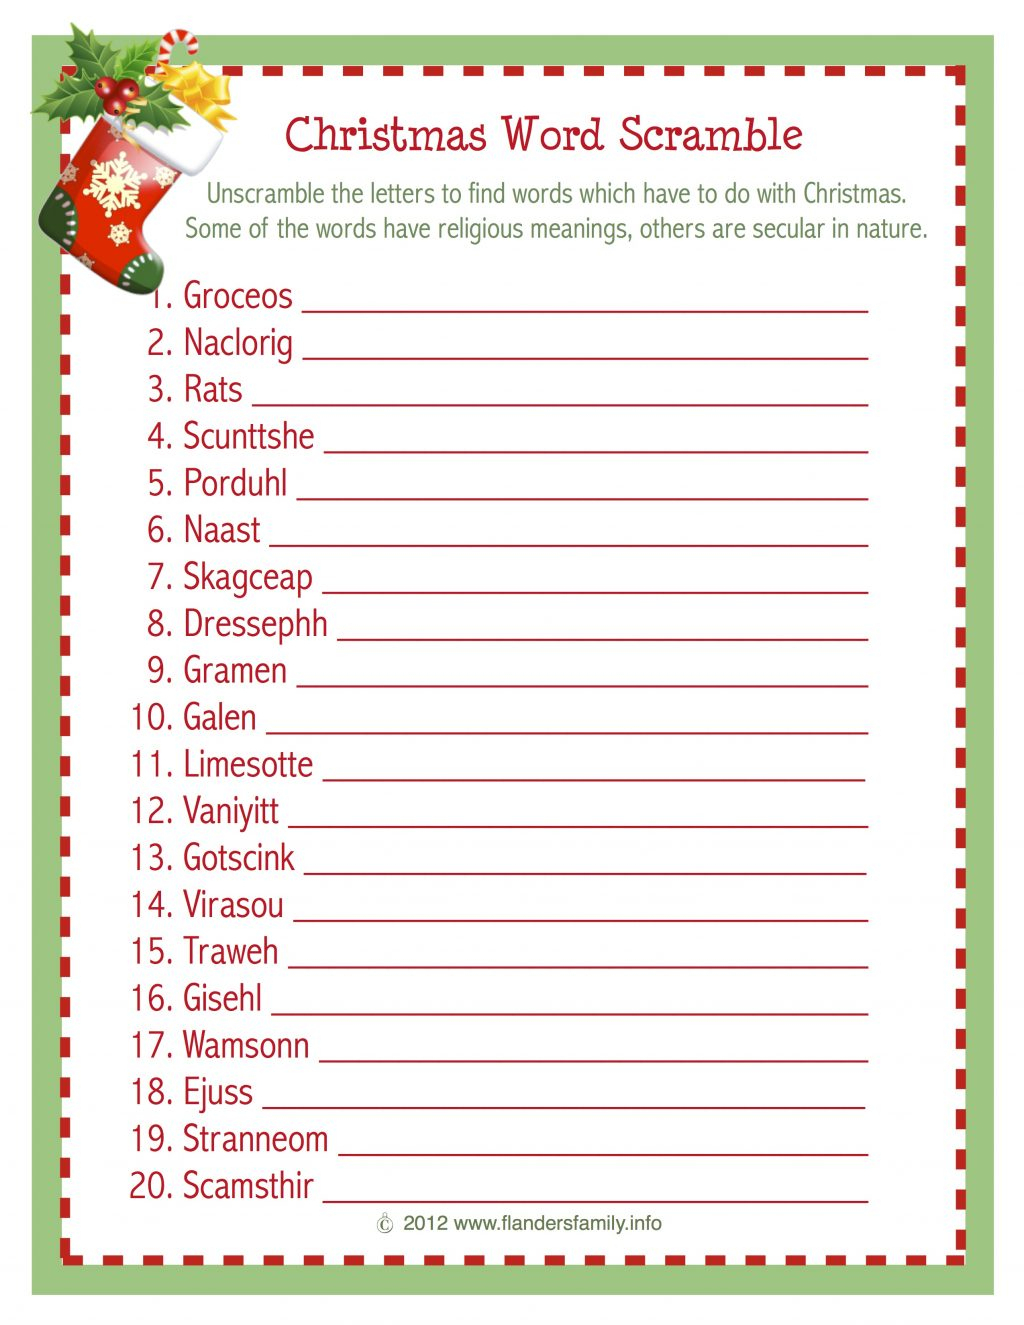 Christmas Word Scramble (Free Printable) - Flanders Family Homelife - Free Holiday Games Printable